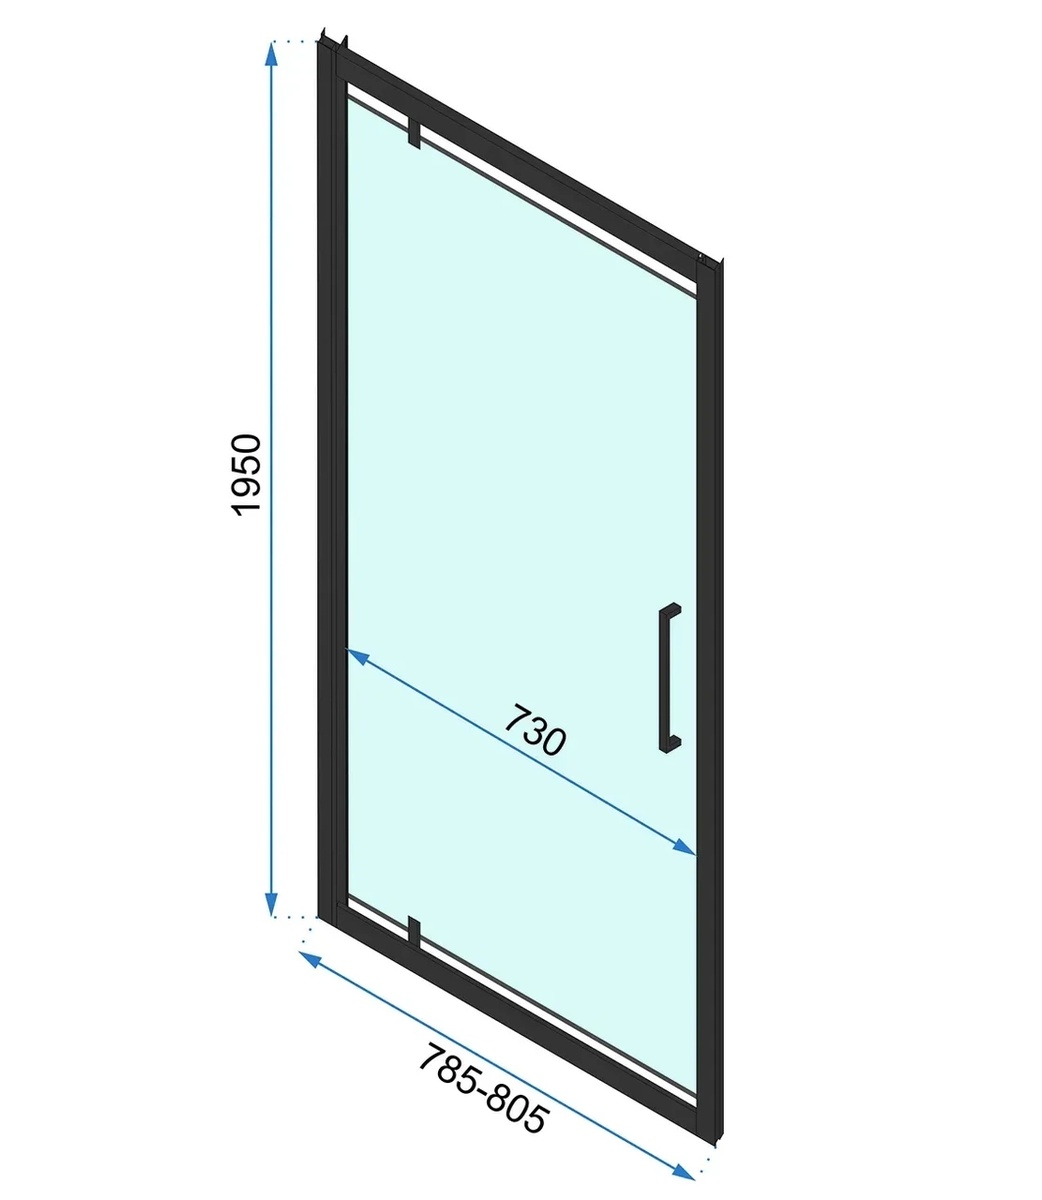 Кабина для душа прямоугольная угловая без поддона REA RAPID SWING 90x80x195см прозрачное стекло 6мм профиль черный REA-K6422 + REA-K6408